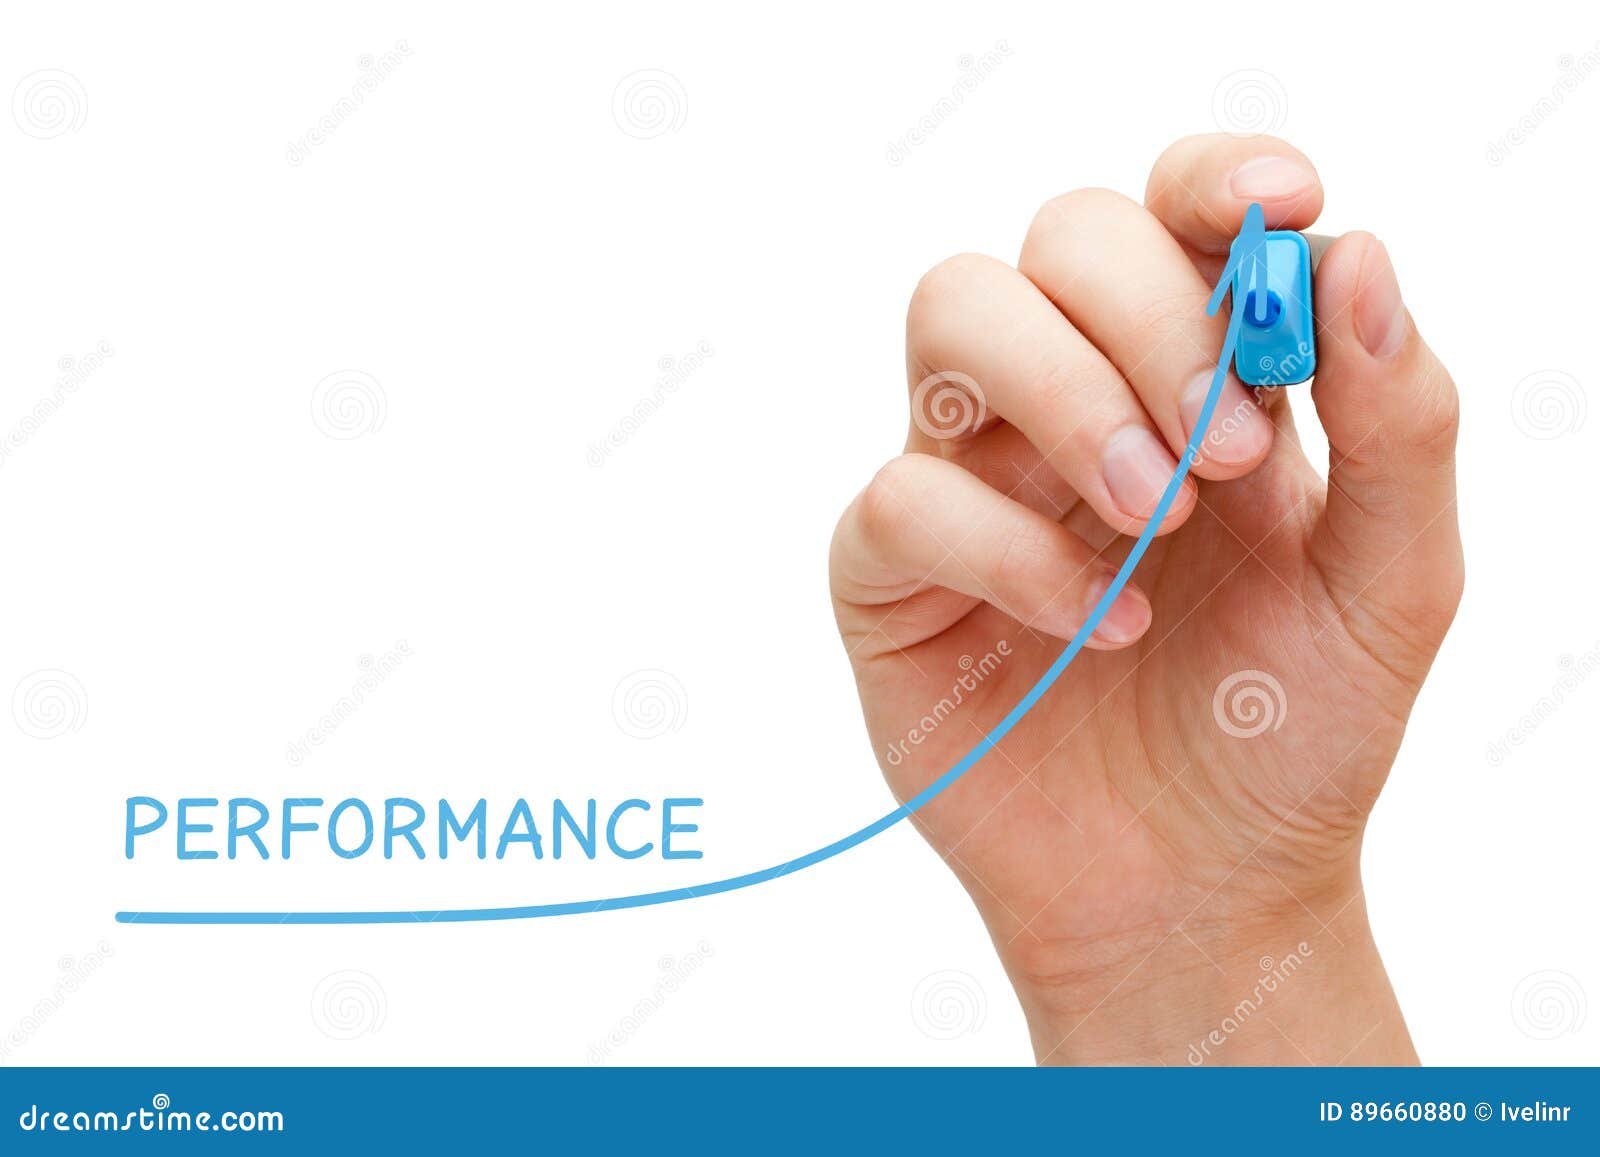 performance improvement graph concept